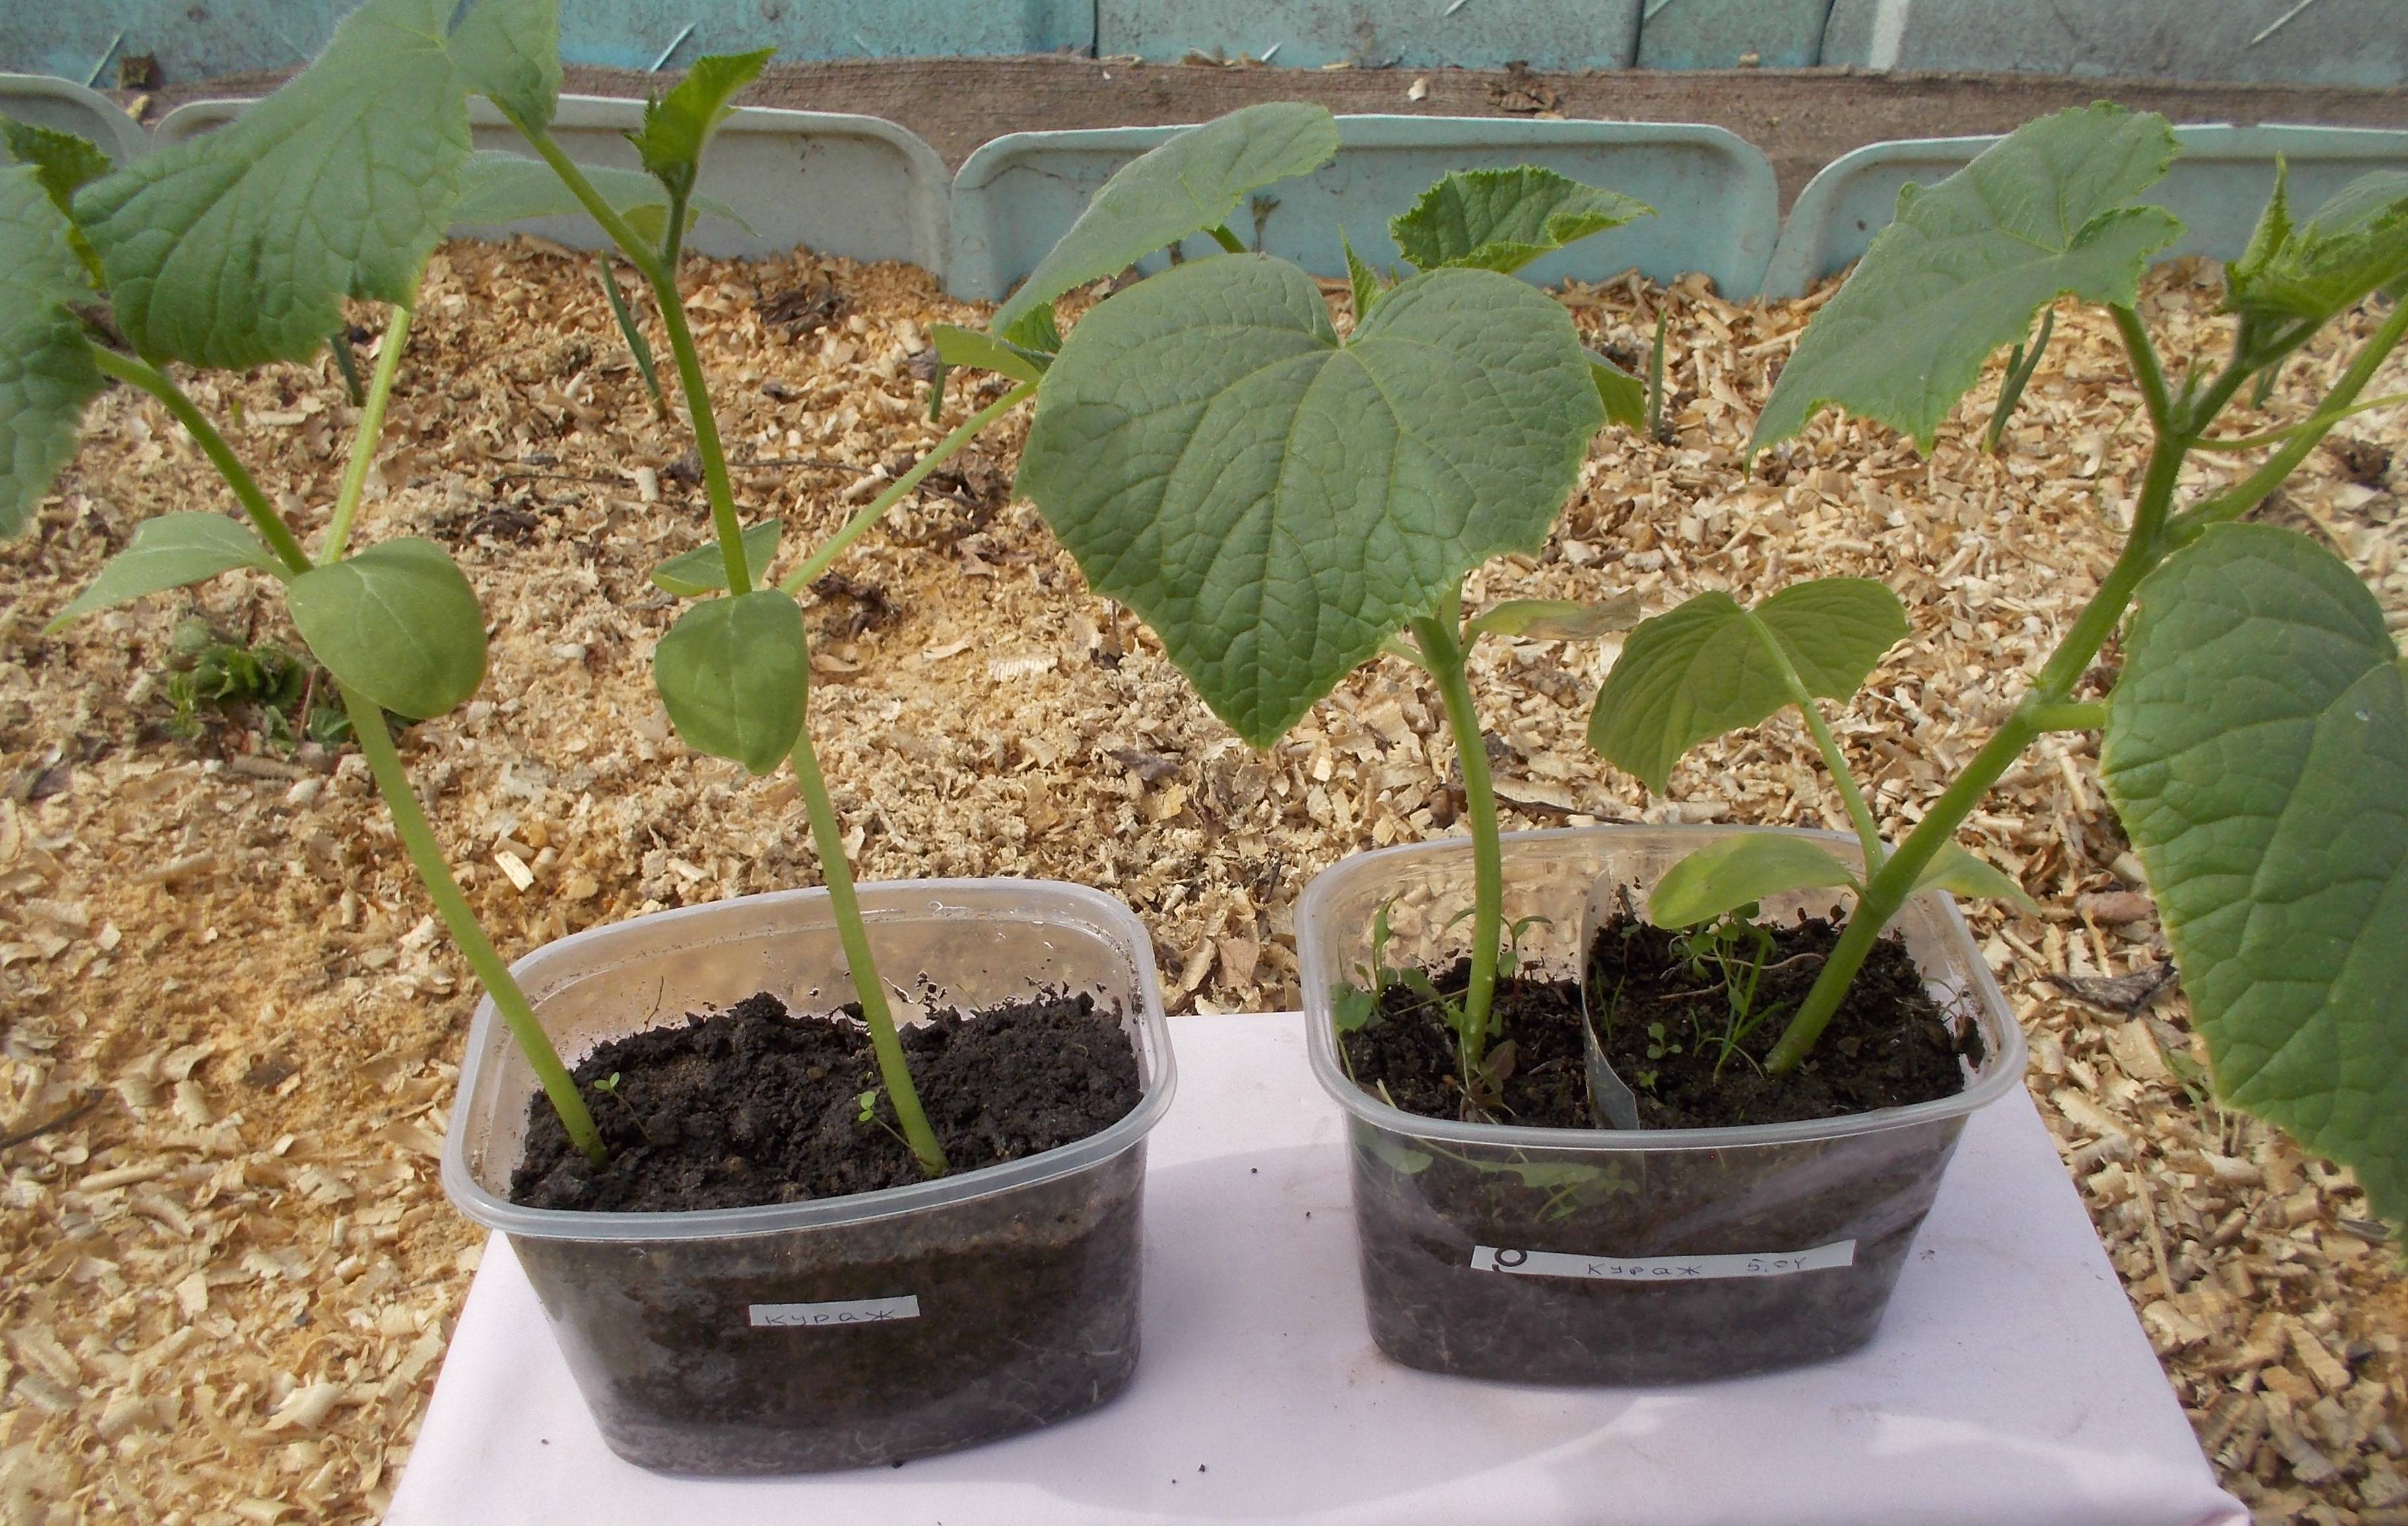 Выращивание рассады огурцов в домашних условиях для теплицы, открытого грунта, фото и видео